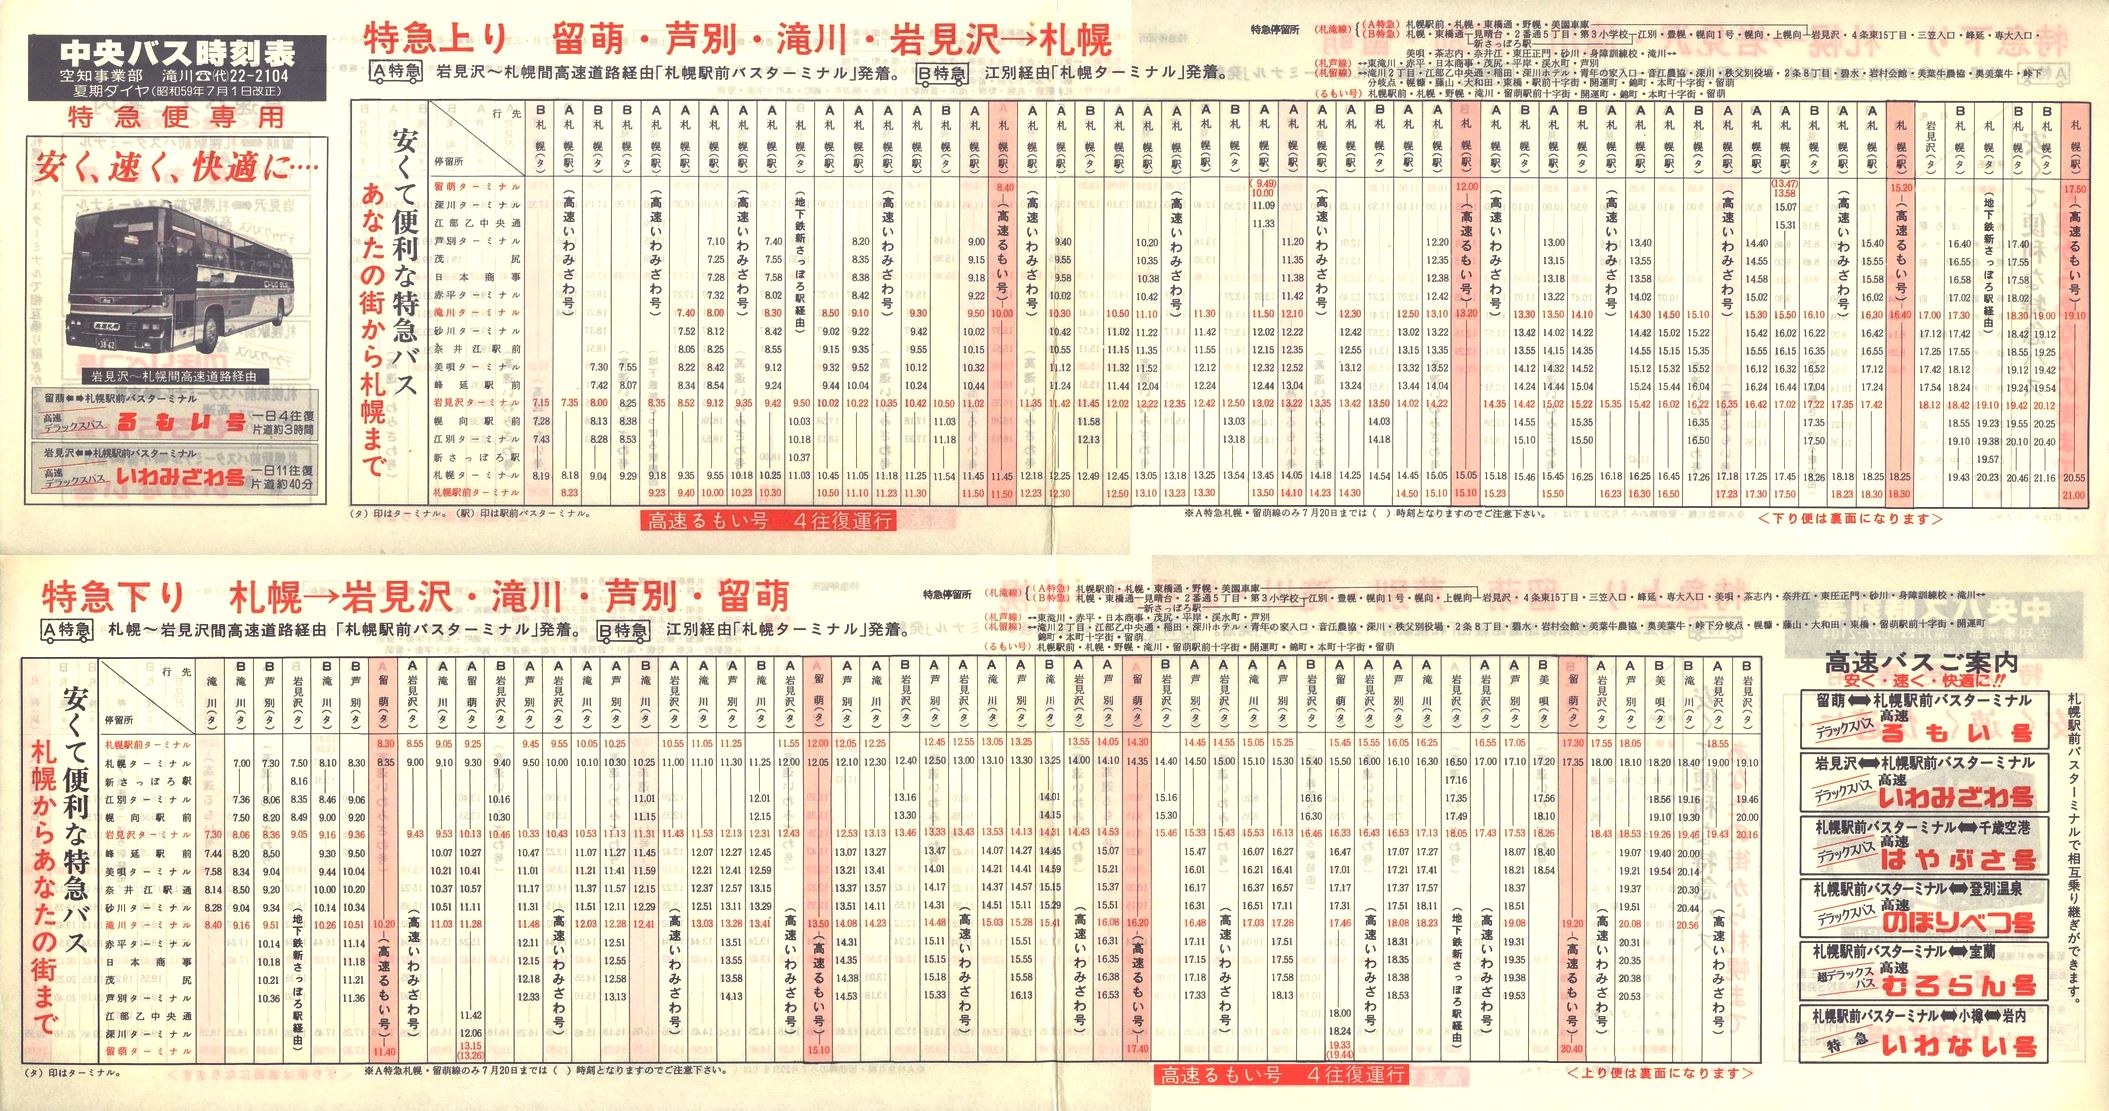 1984-07-01改正_北海道中央バス(空知)_特急便時刻表